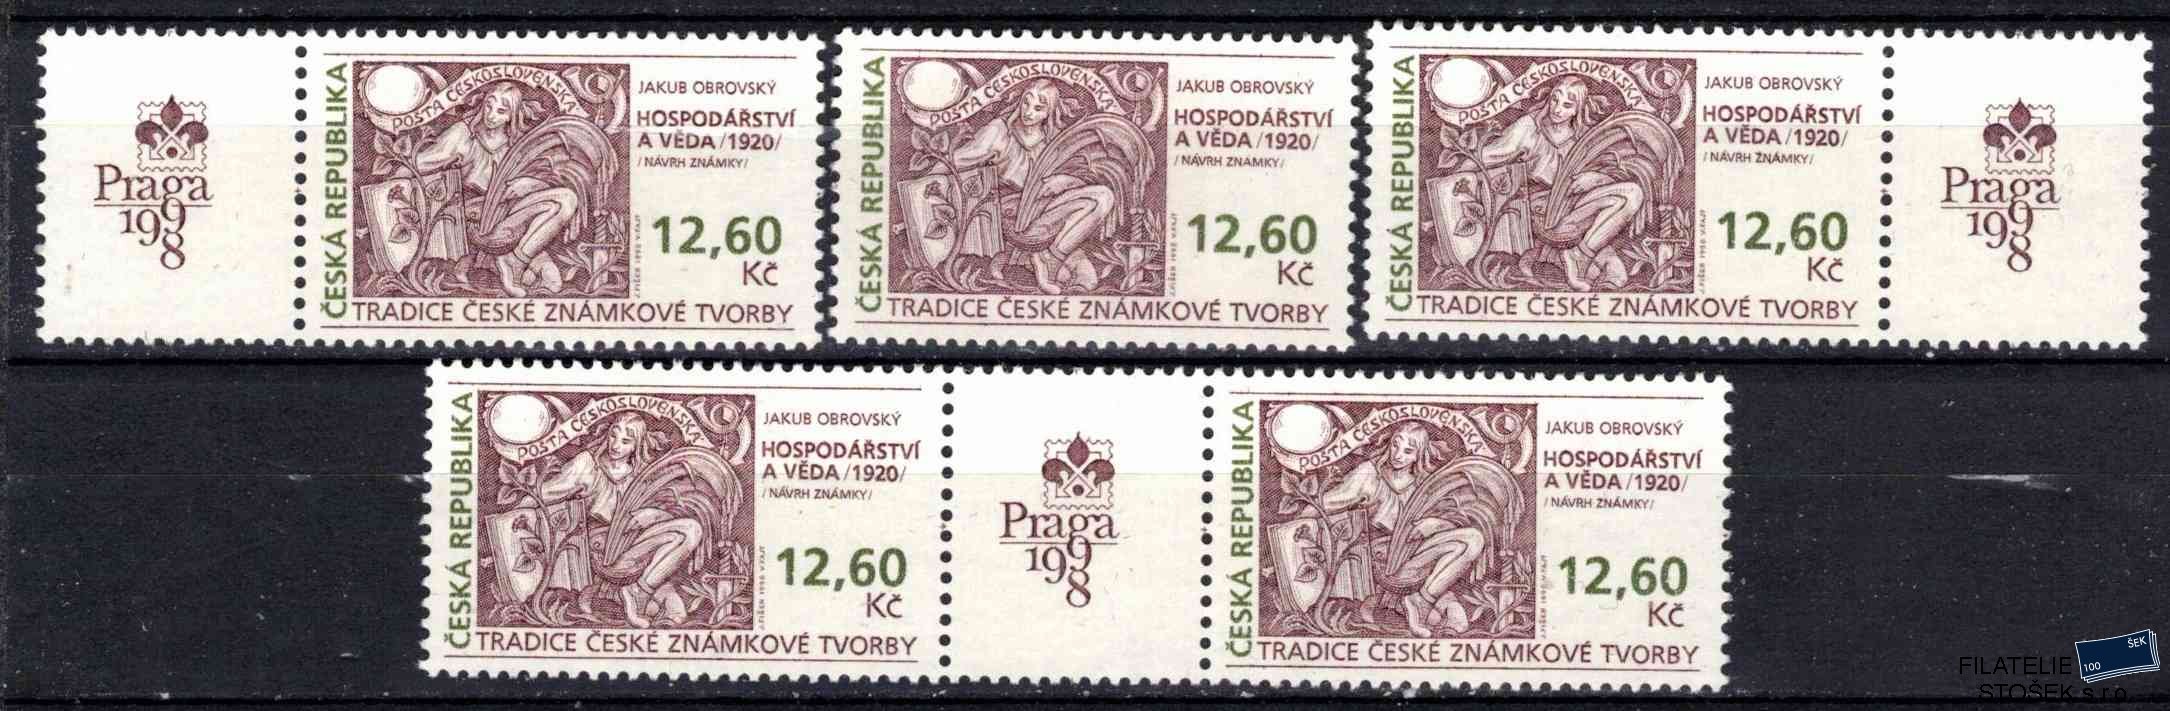 Česká republika známky 166 sestava známek